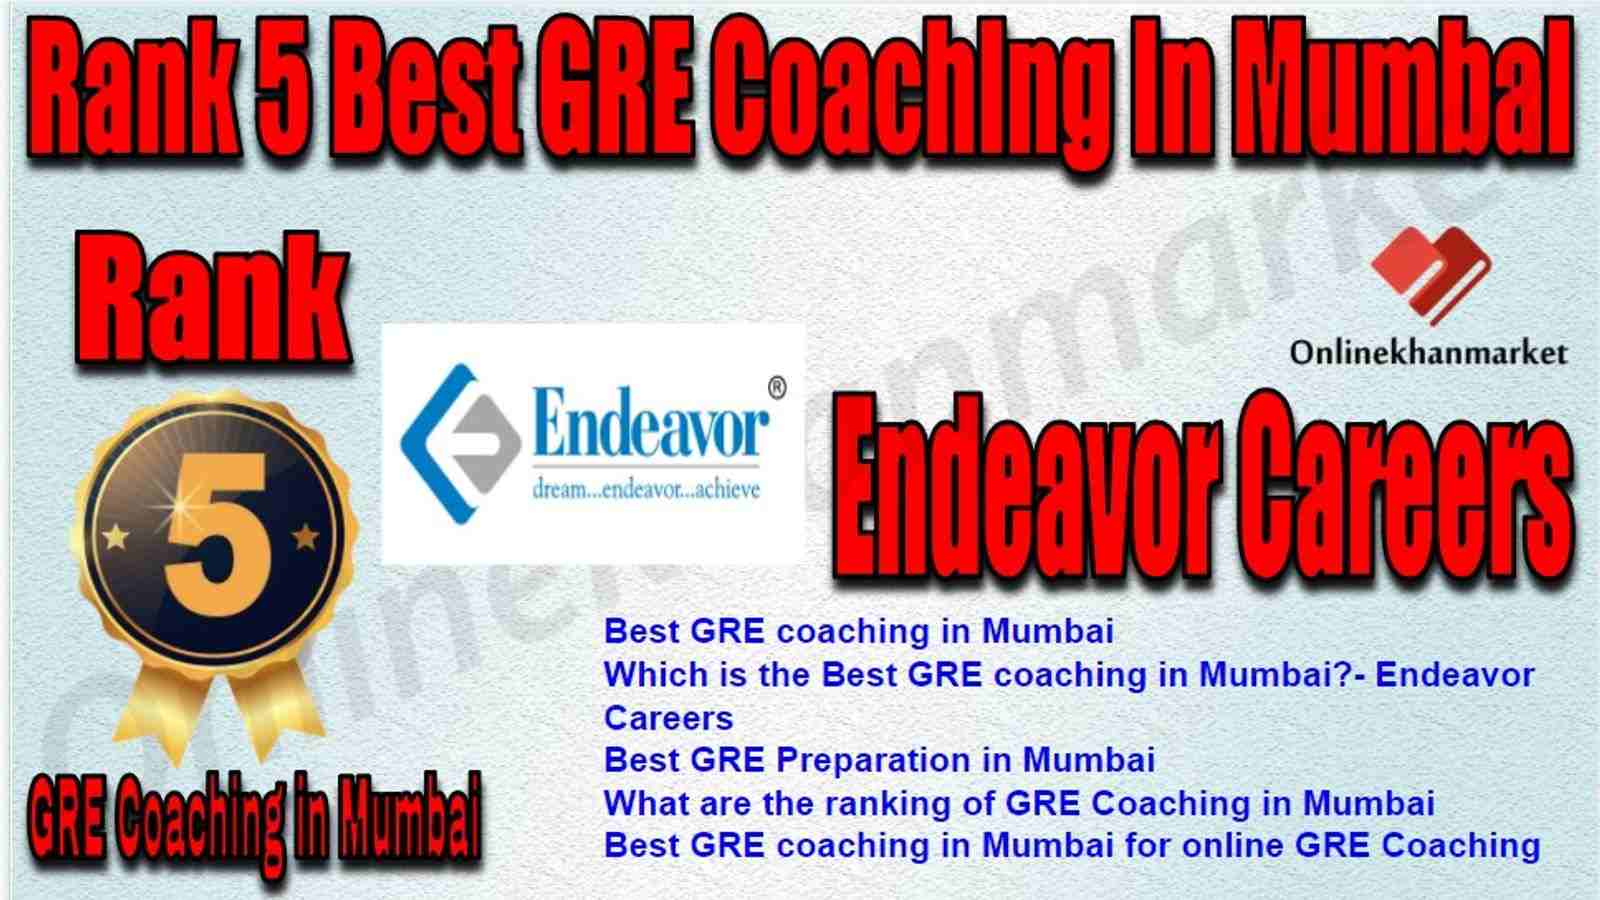 Rank 5 Best GRE Coaching in Mumbai